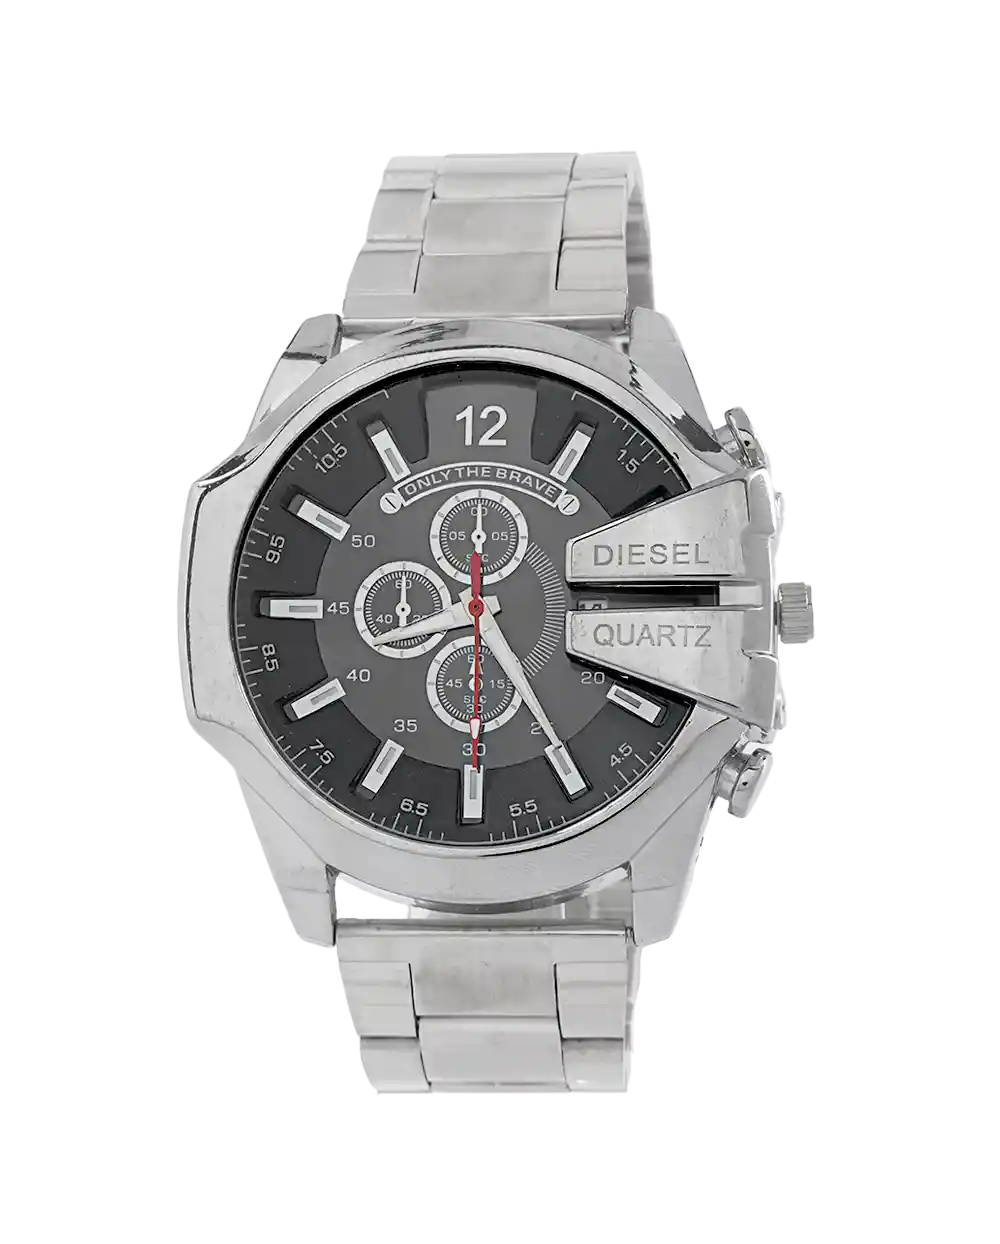 خرید ساعت مچی مردانه دیزل DIESEL مدل 2070 بند نقره ای استیل سیلور و صفحه مشکی رنگ ثابت بهترین قیمت به همراه ارسال رایگان و جعبه